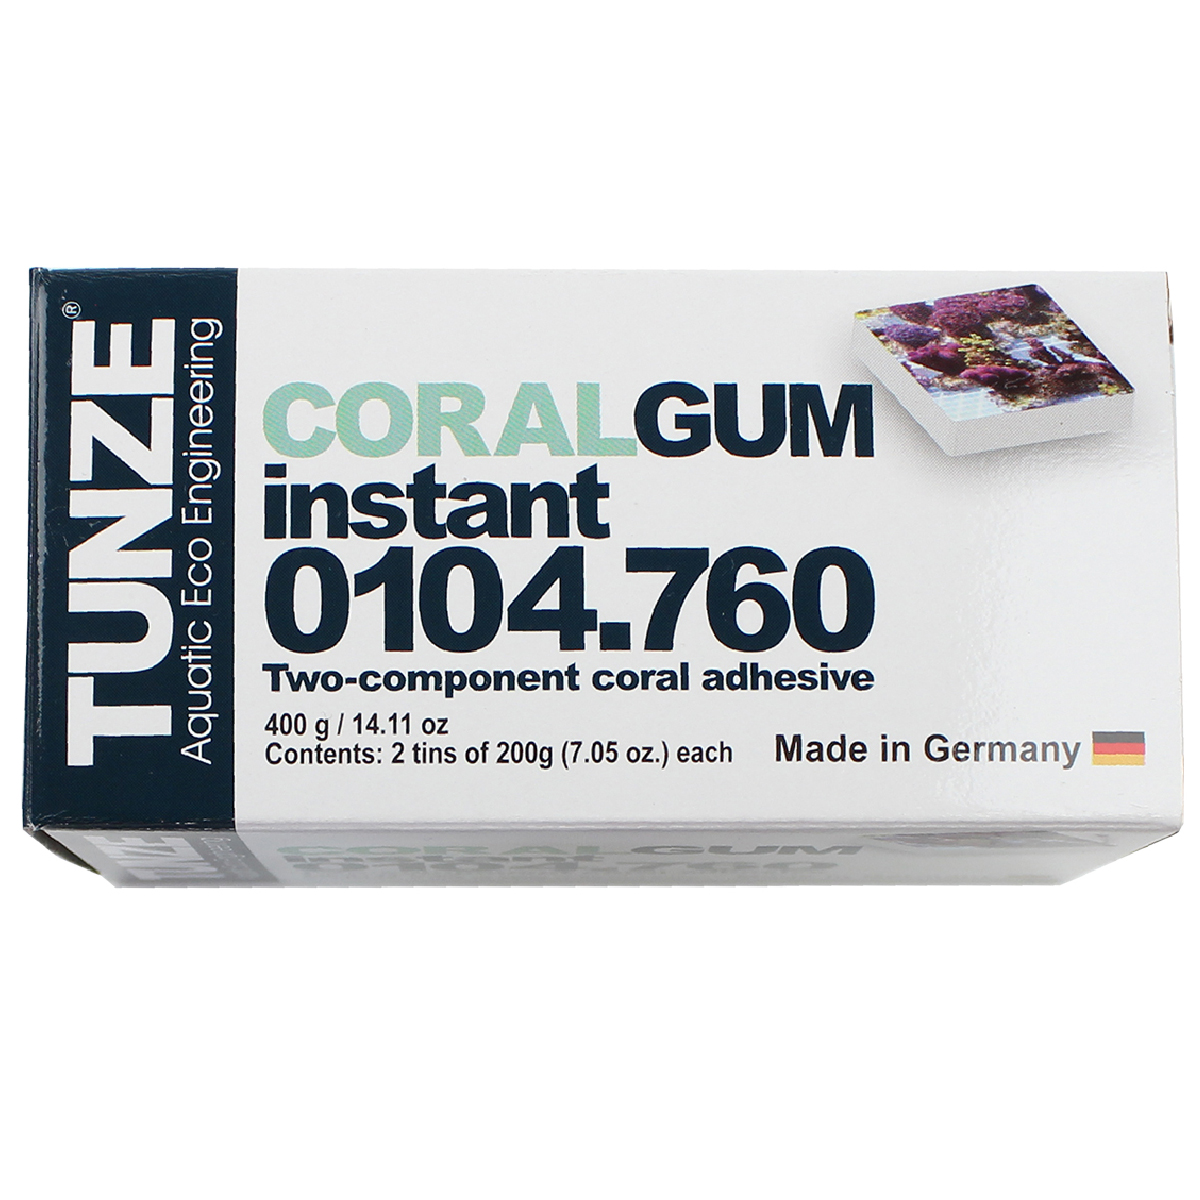 Coral Gum instant, 400 g (14.11oz.)